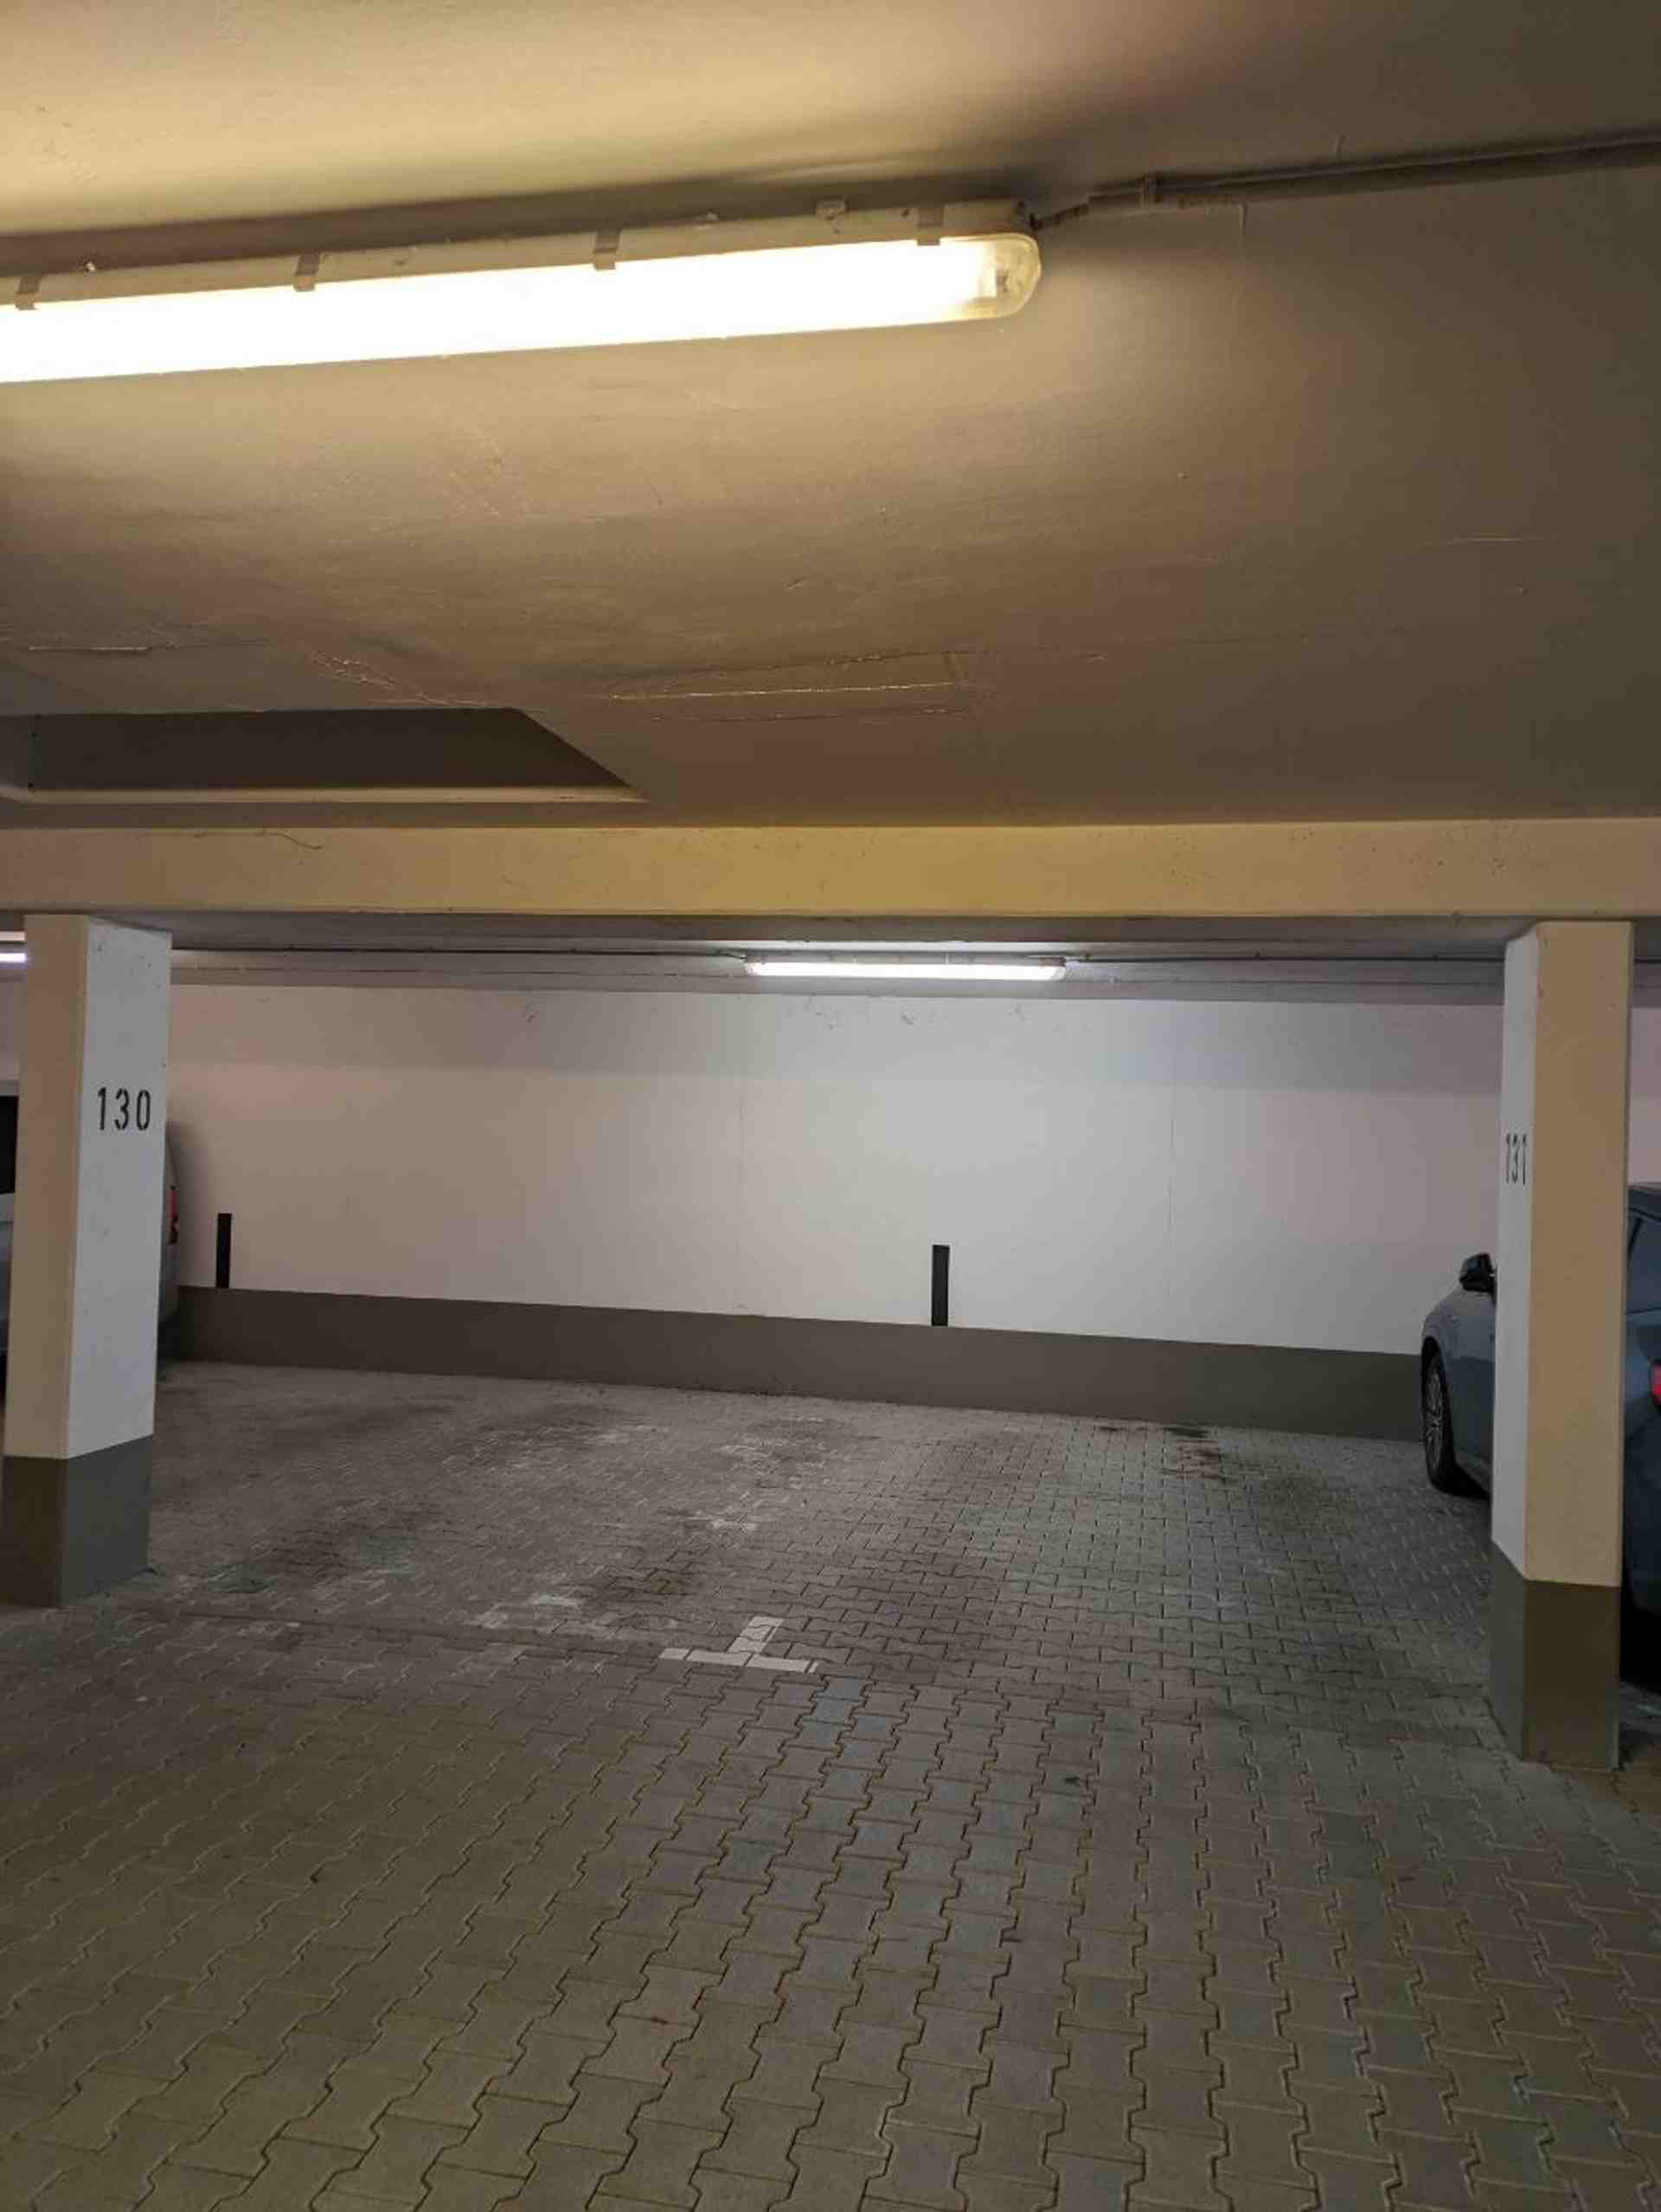 Veľké podzemné parkovisko na Regerplatz - Pöppelstraße, 81541 Mníchov - Fotka 2 z 4